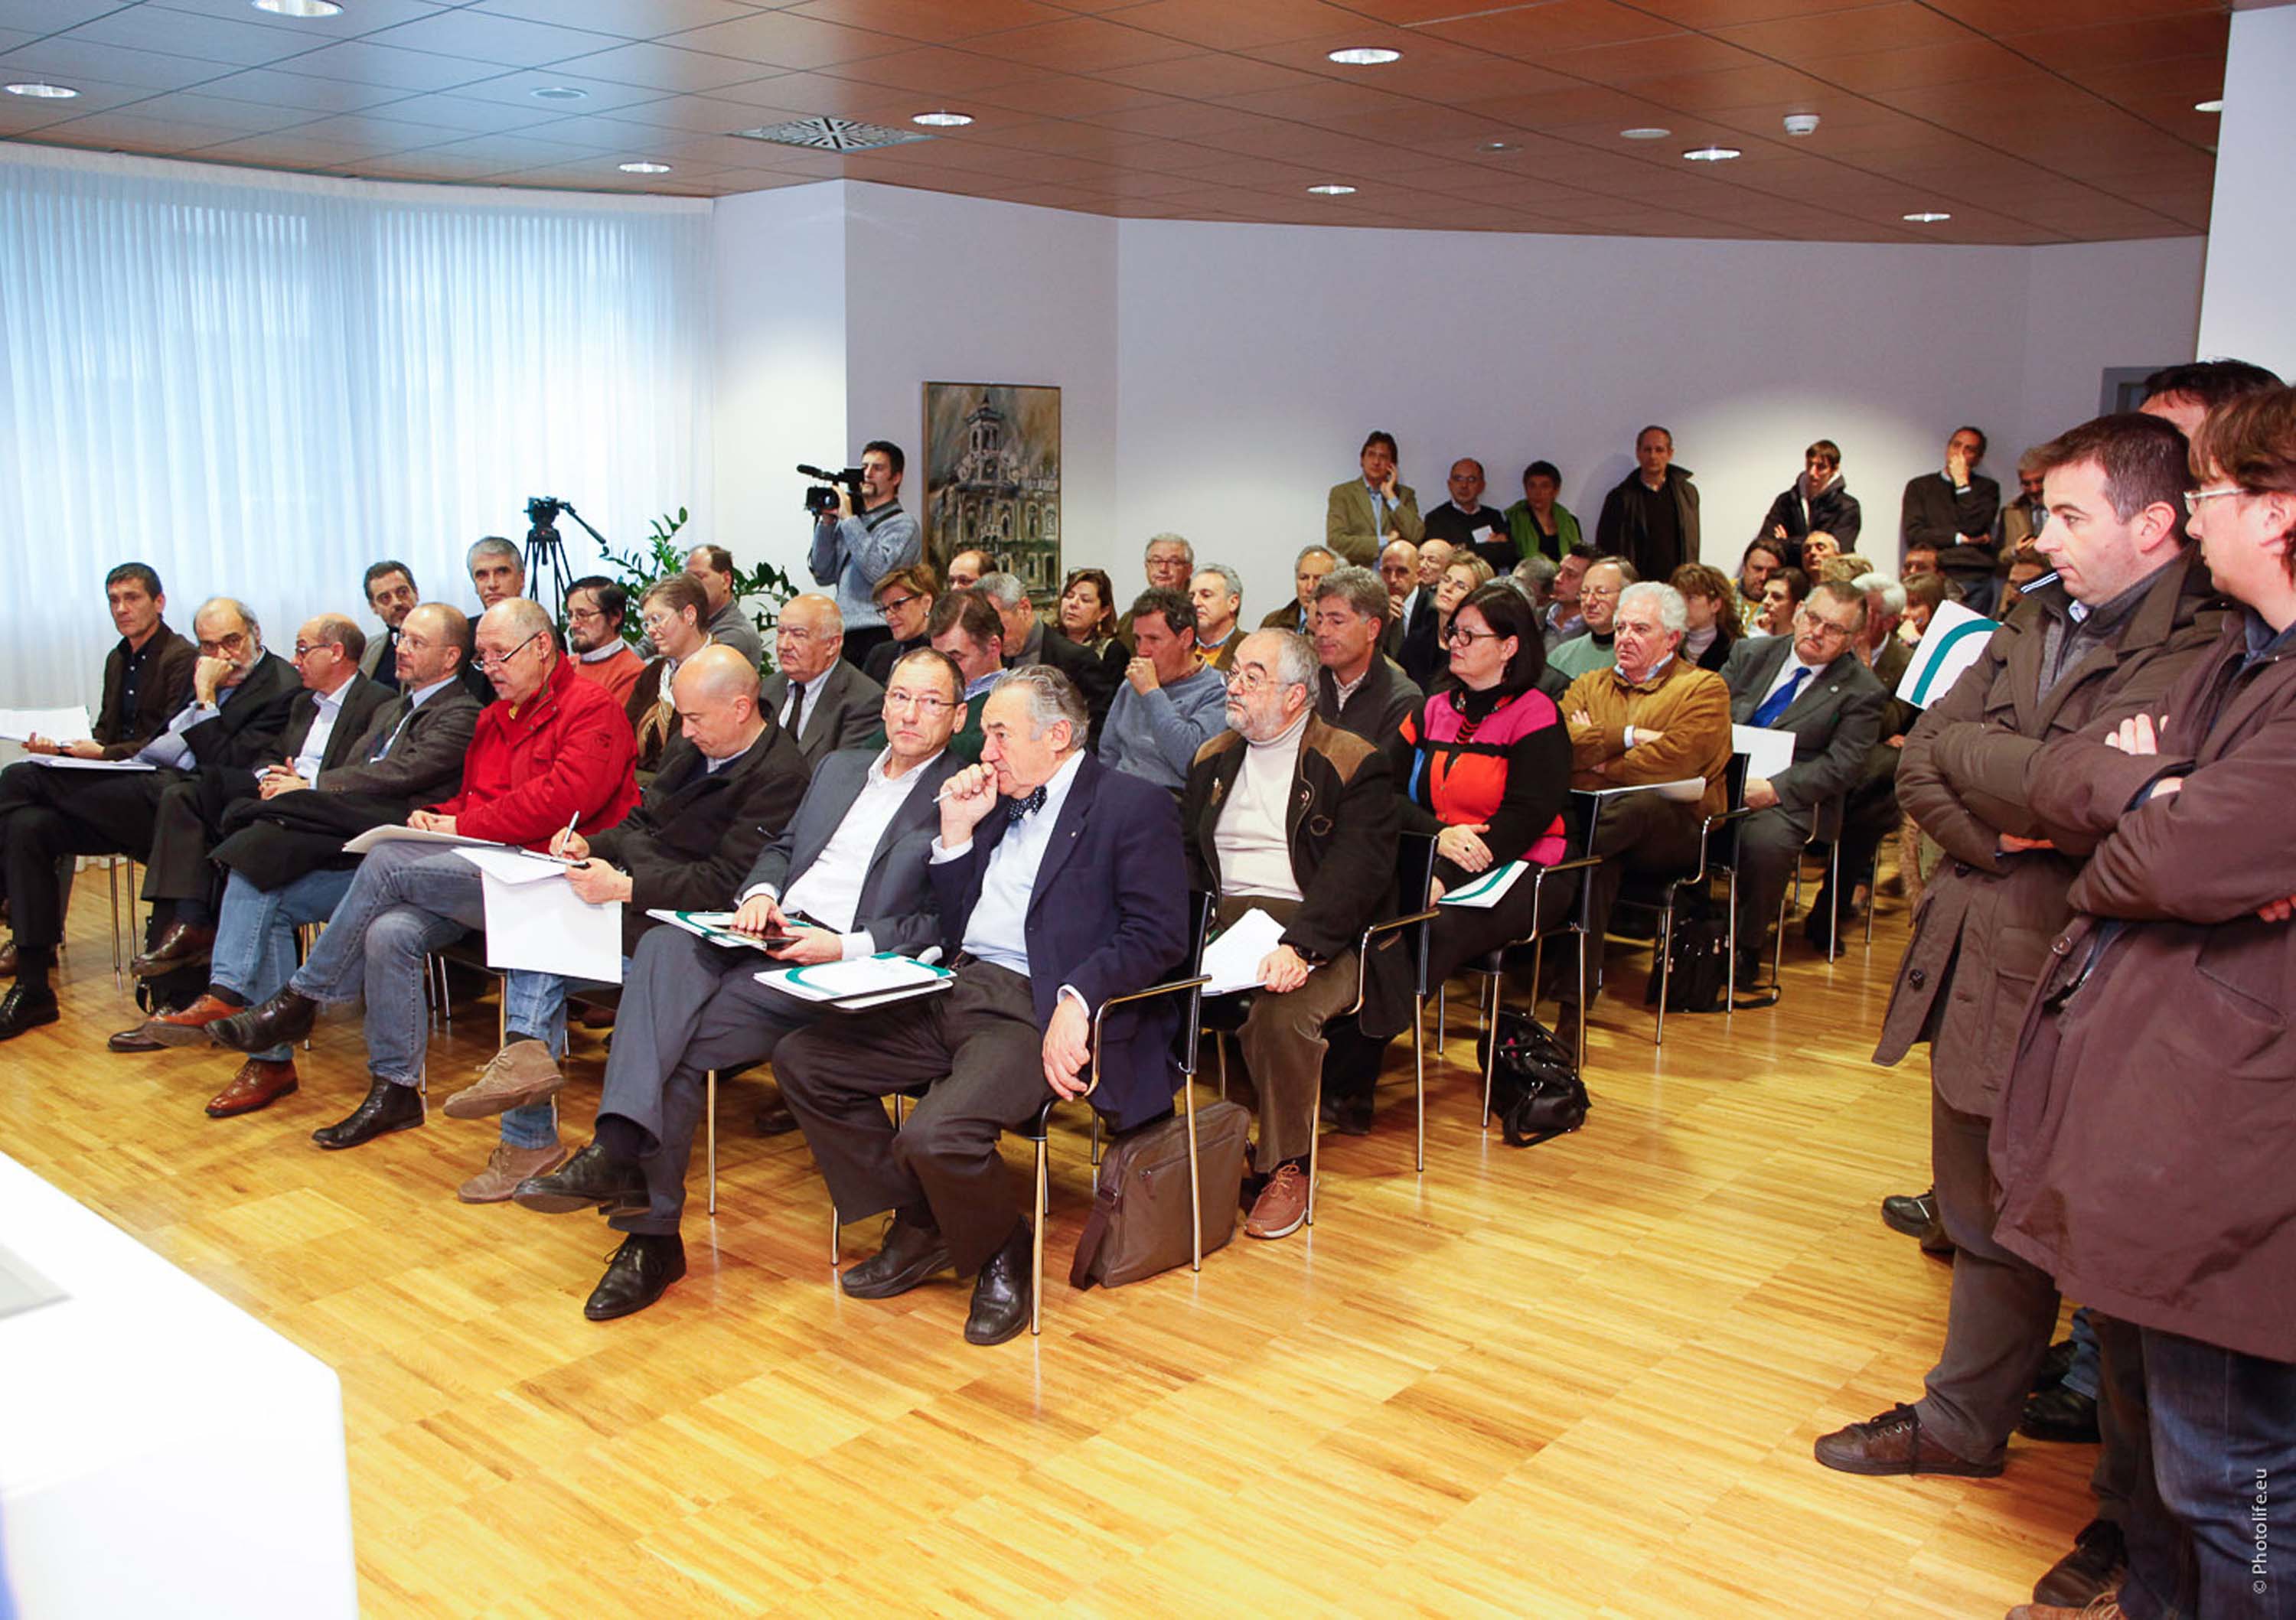 Pubblico alla presentazione dei progetti del CRITA-Centro di Ricerca e Innovazione Tecnologica in Agricoltura. (Udine 30/11/12)